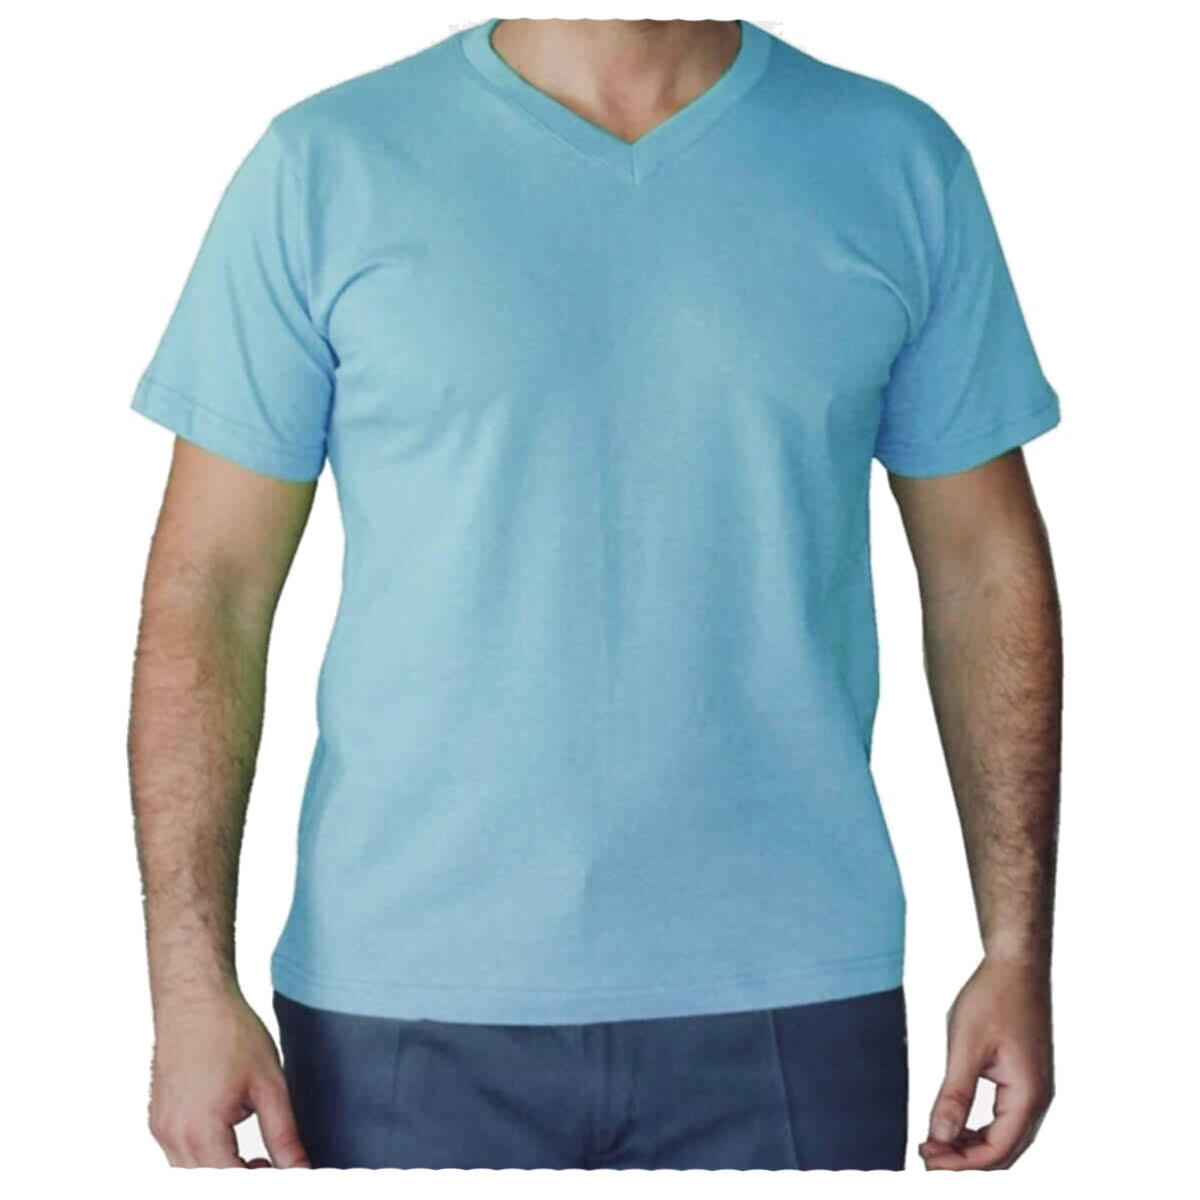 V yaka kısa kollu %100 pamuklu penye kumaştan üretilmiş baskıya ve nakışa uygun geniş kalıp çeşitli renk ve bedenlerde personel tişörtü